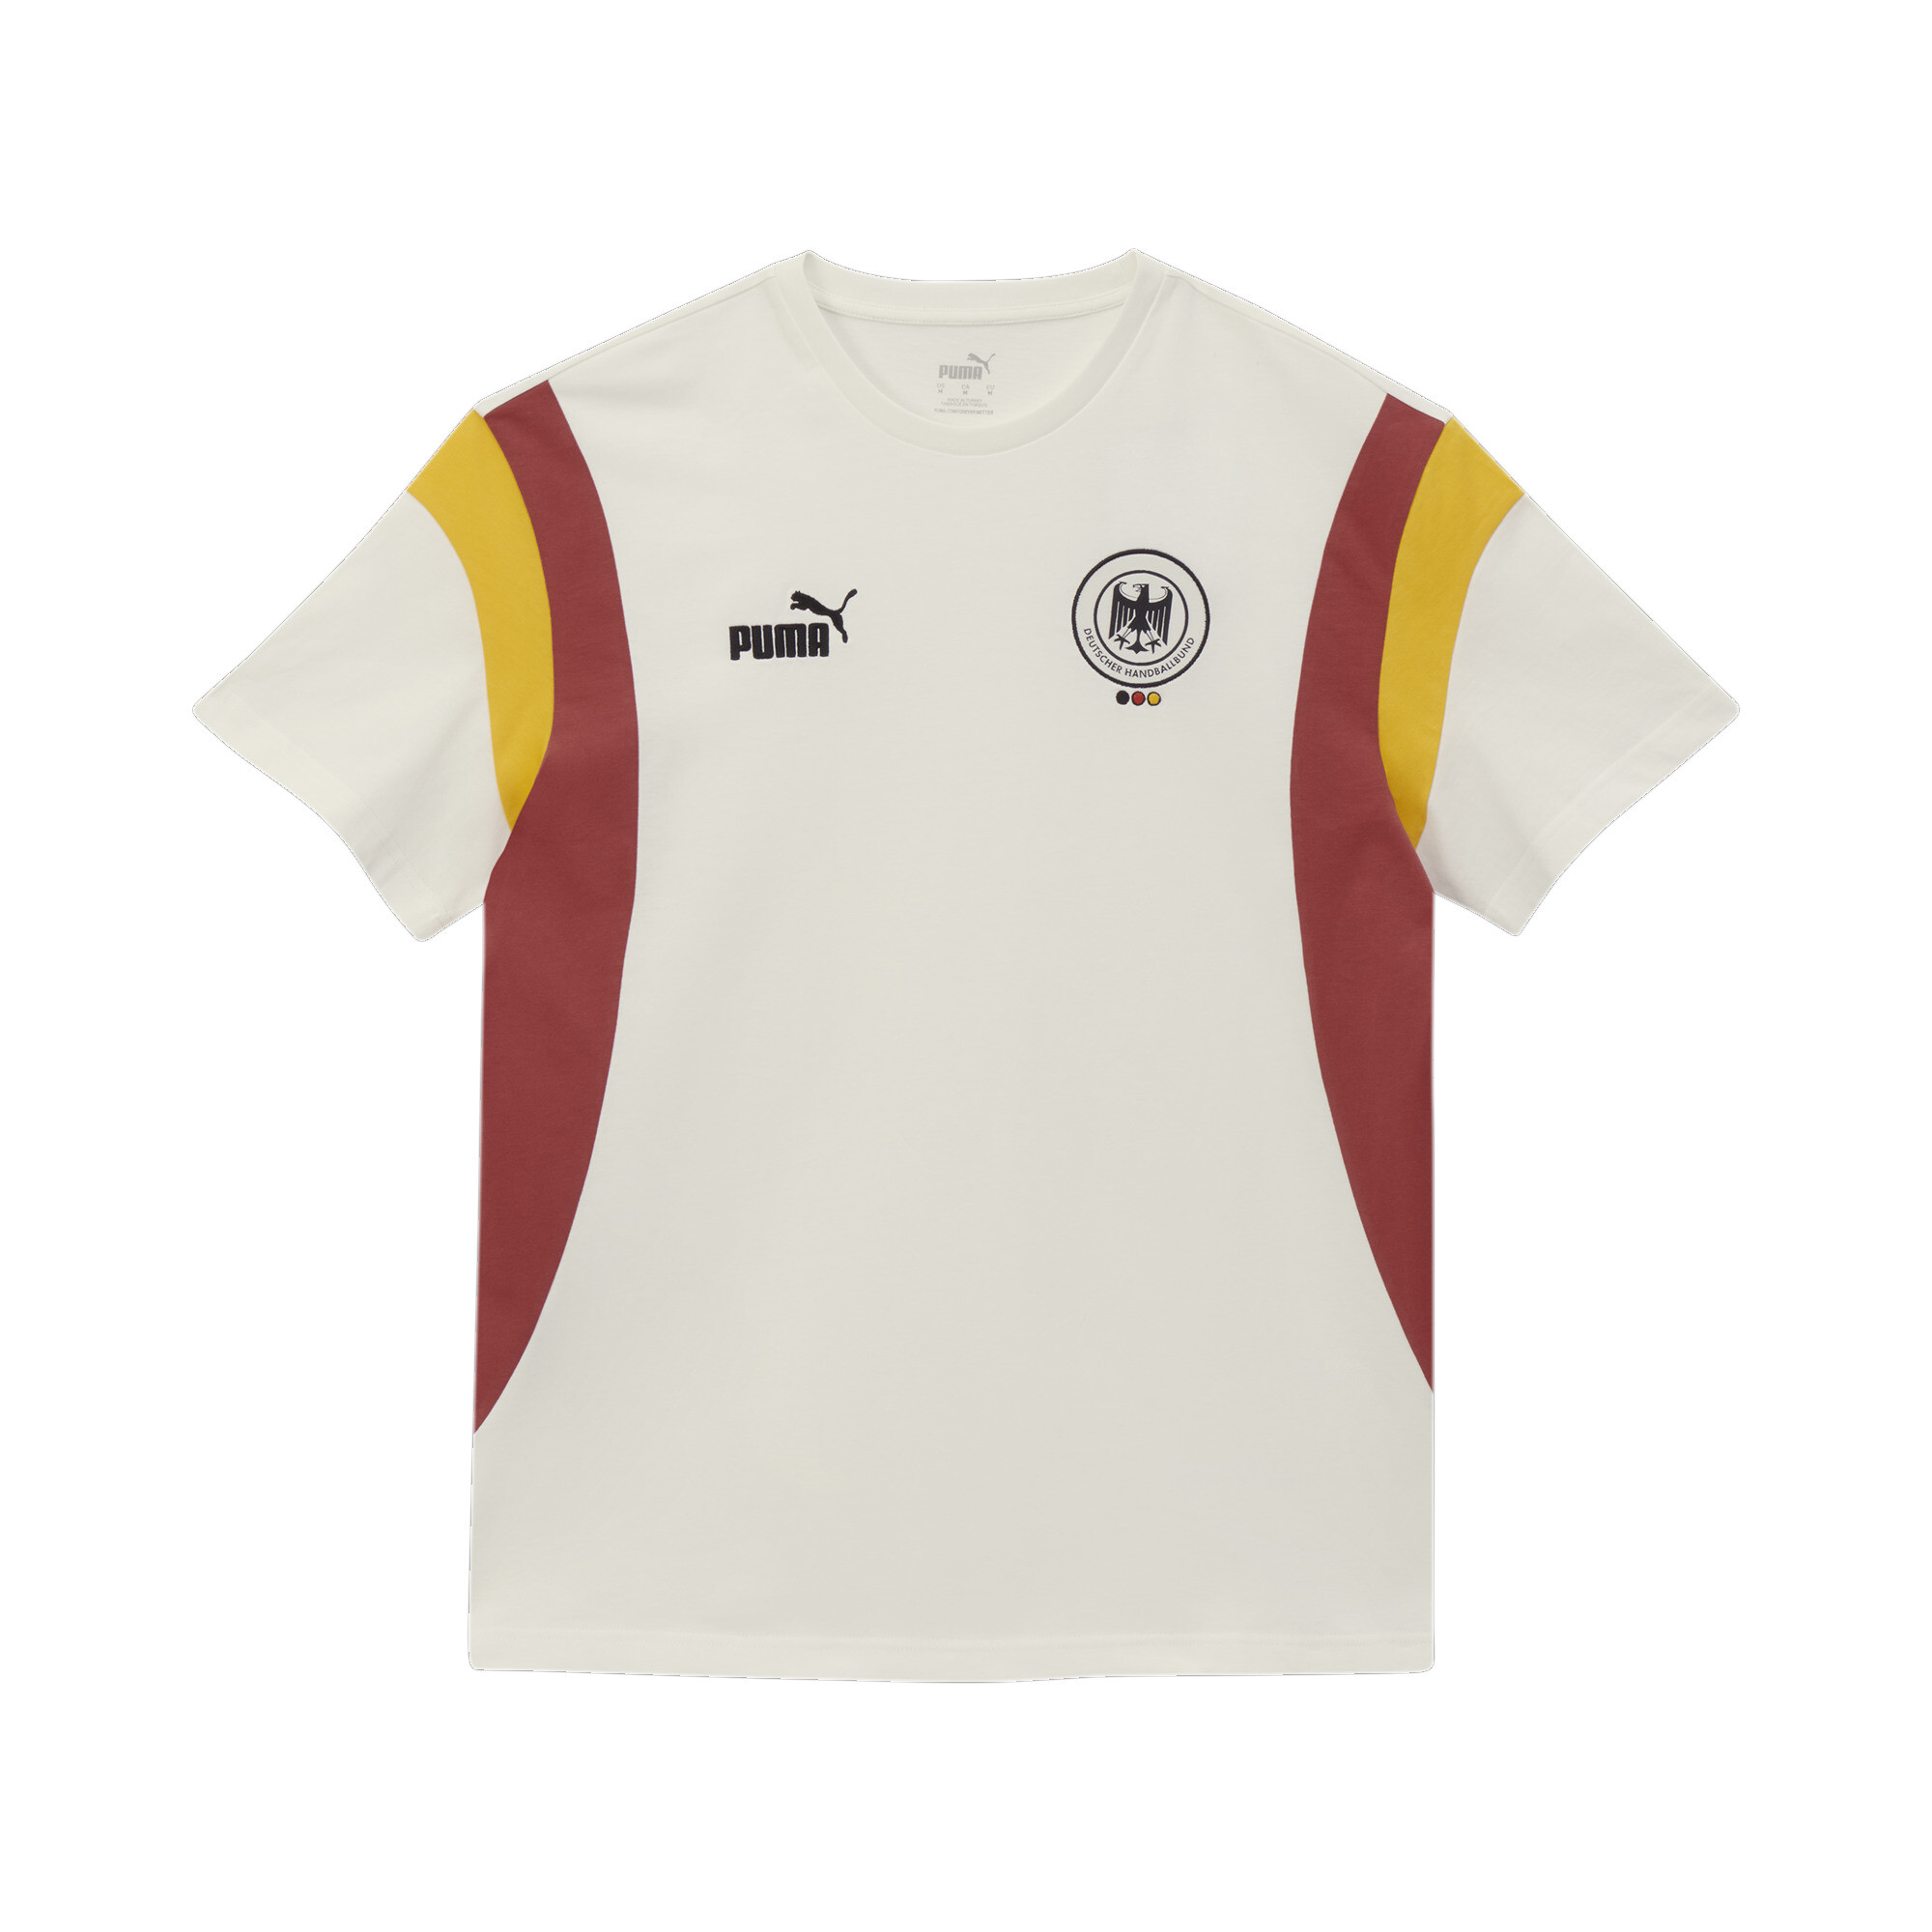 Men's Puma Deutscher Handball Bund Archive's T-Shirt, White, Size L, German